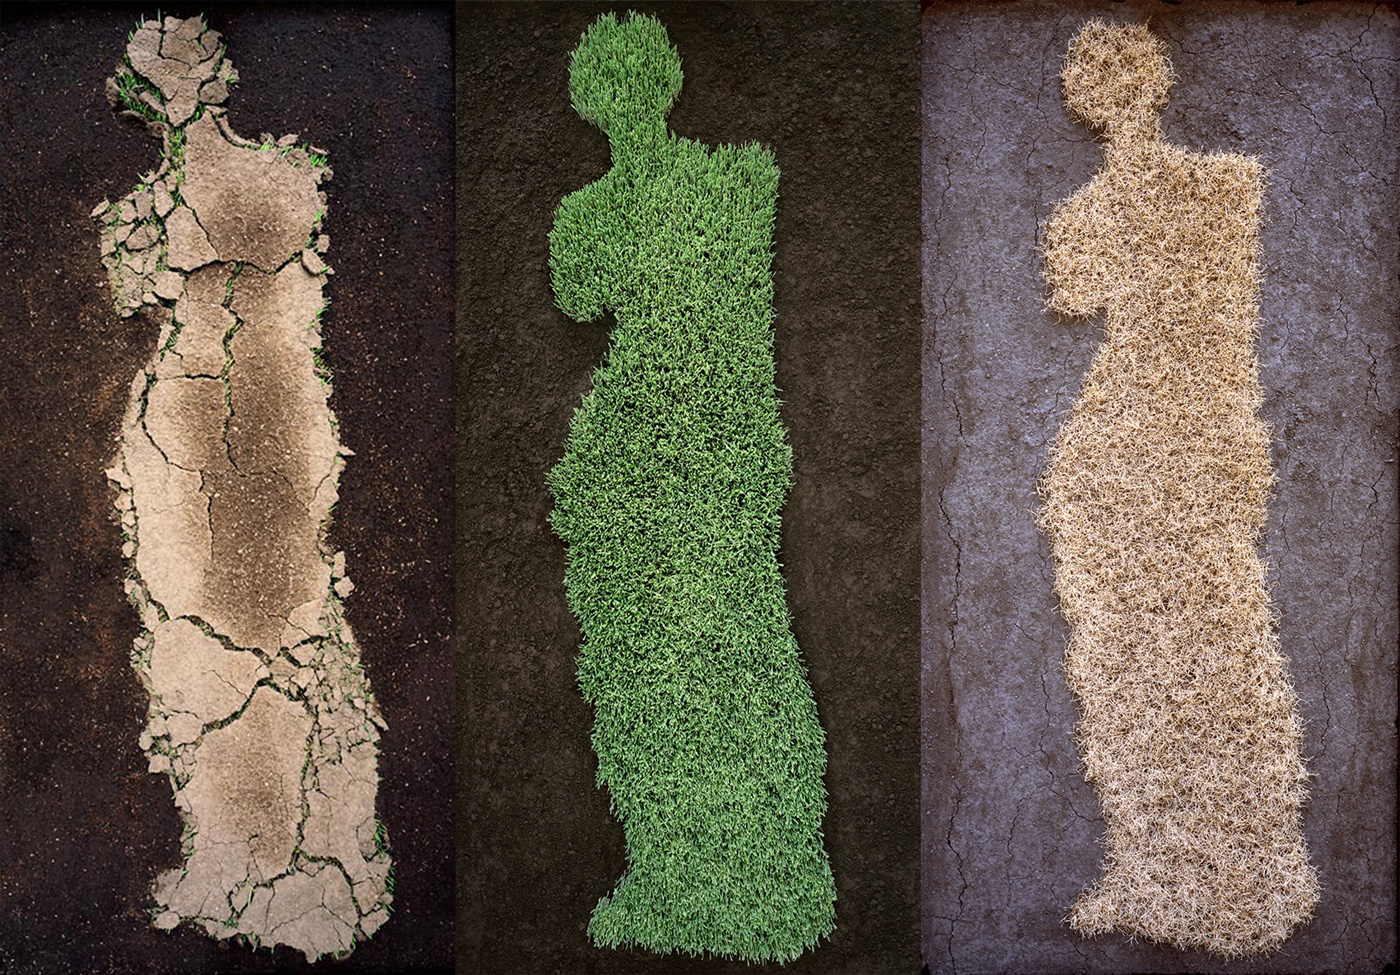  Triptych After Venus De Milo, 2007  Digital Prints Mounted on Diasec  86” x 130”    Tríptico Apartir de Venus de Milo, 2007  Impresión Digital Montada en Acrílico por Emulsión (Diasec)  219 cm x 330 cm 